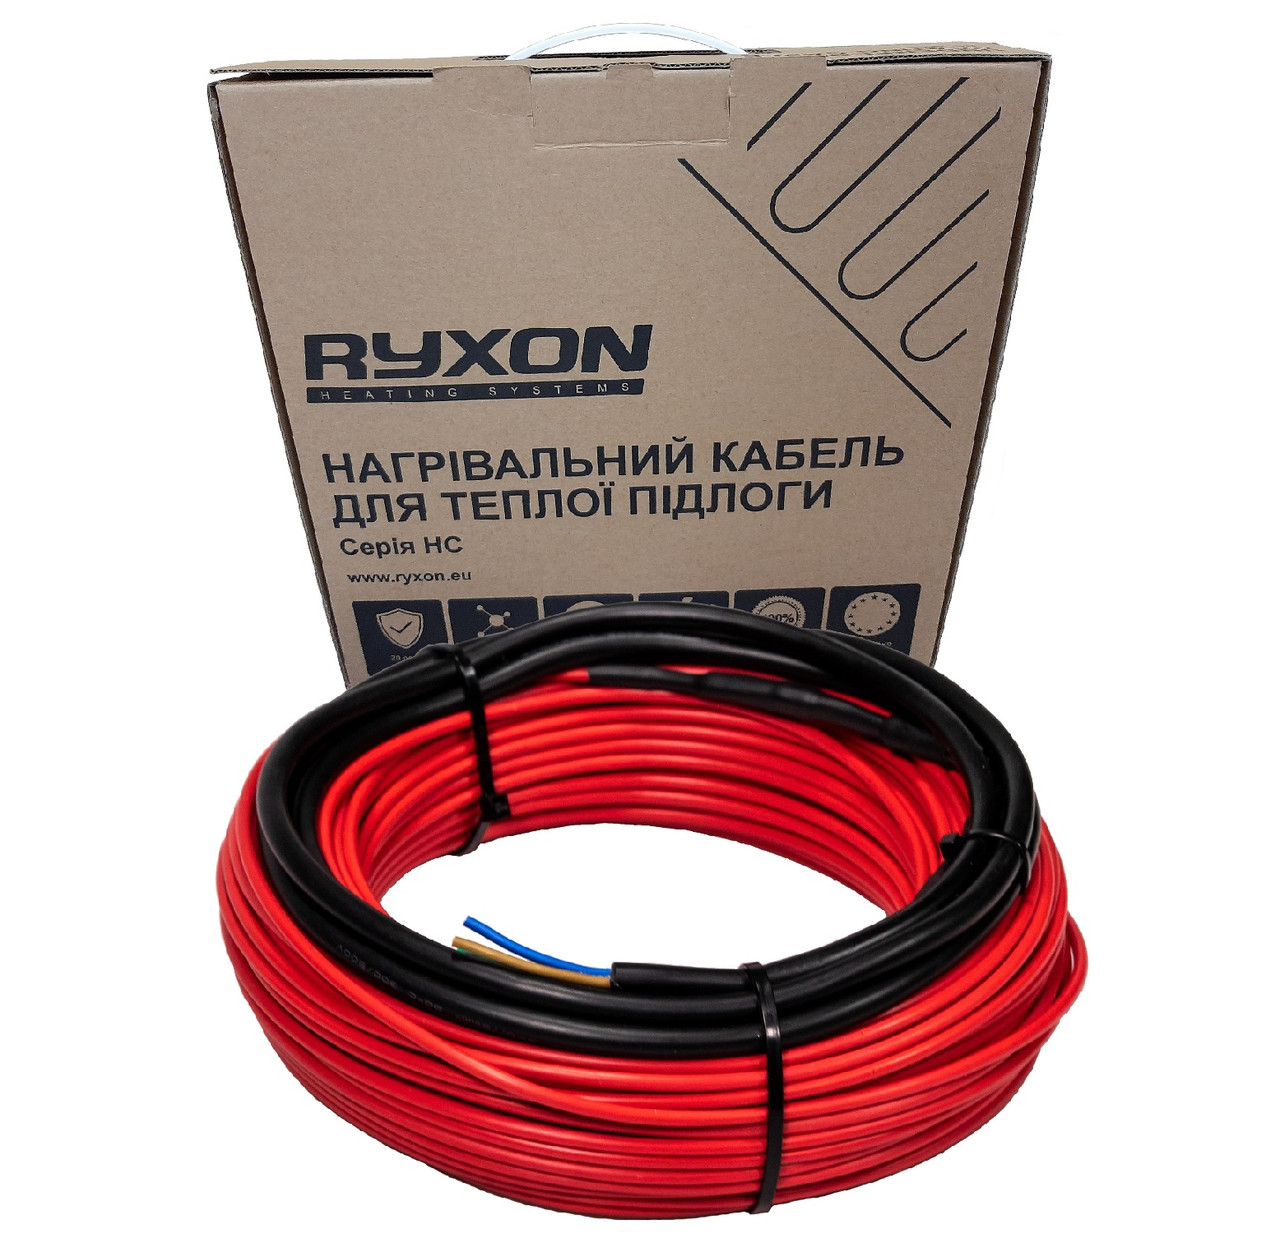 Нагрівальний кабель Ryxon (Латвія) двожильний